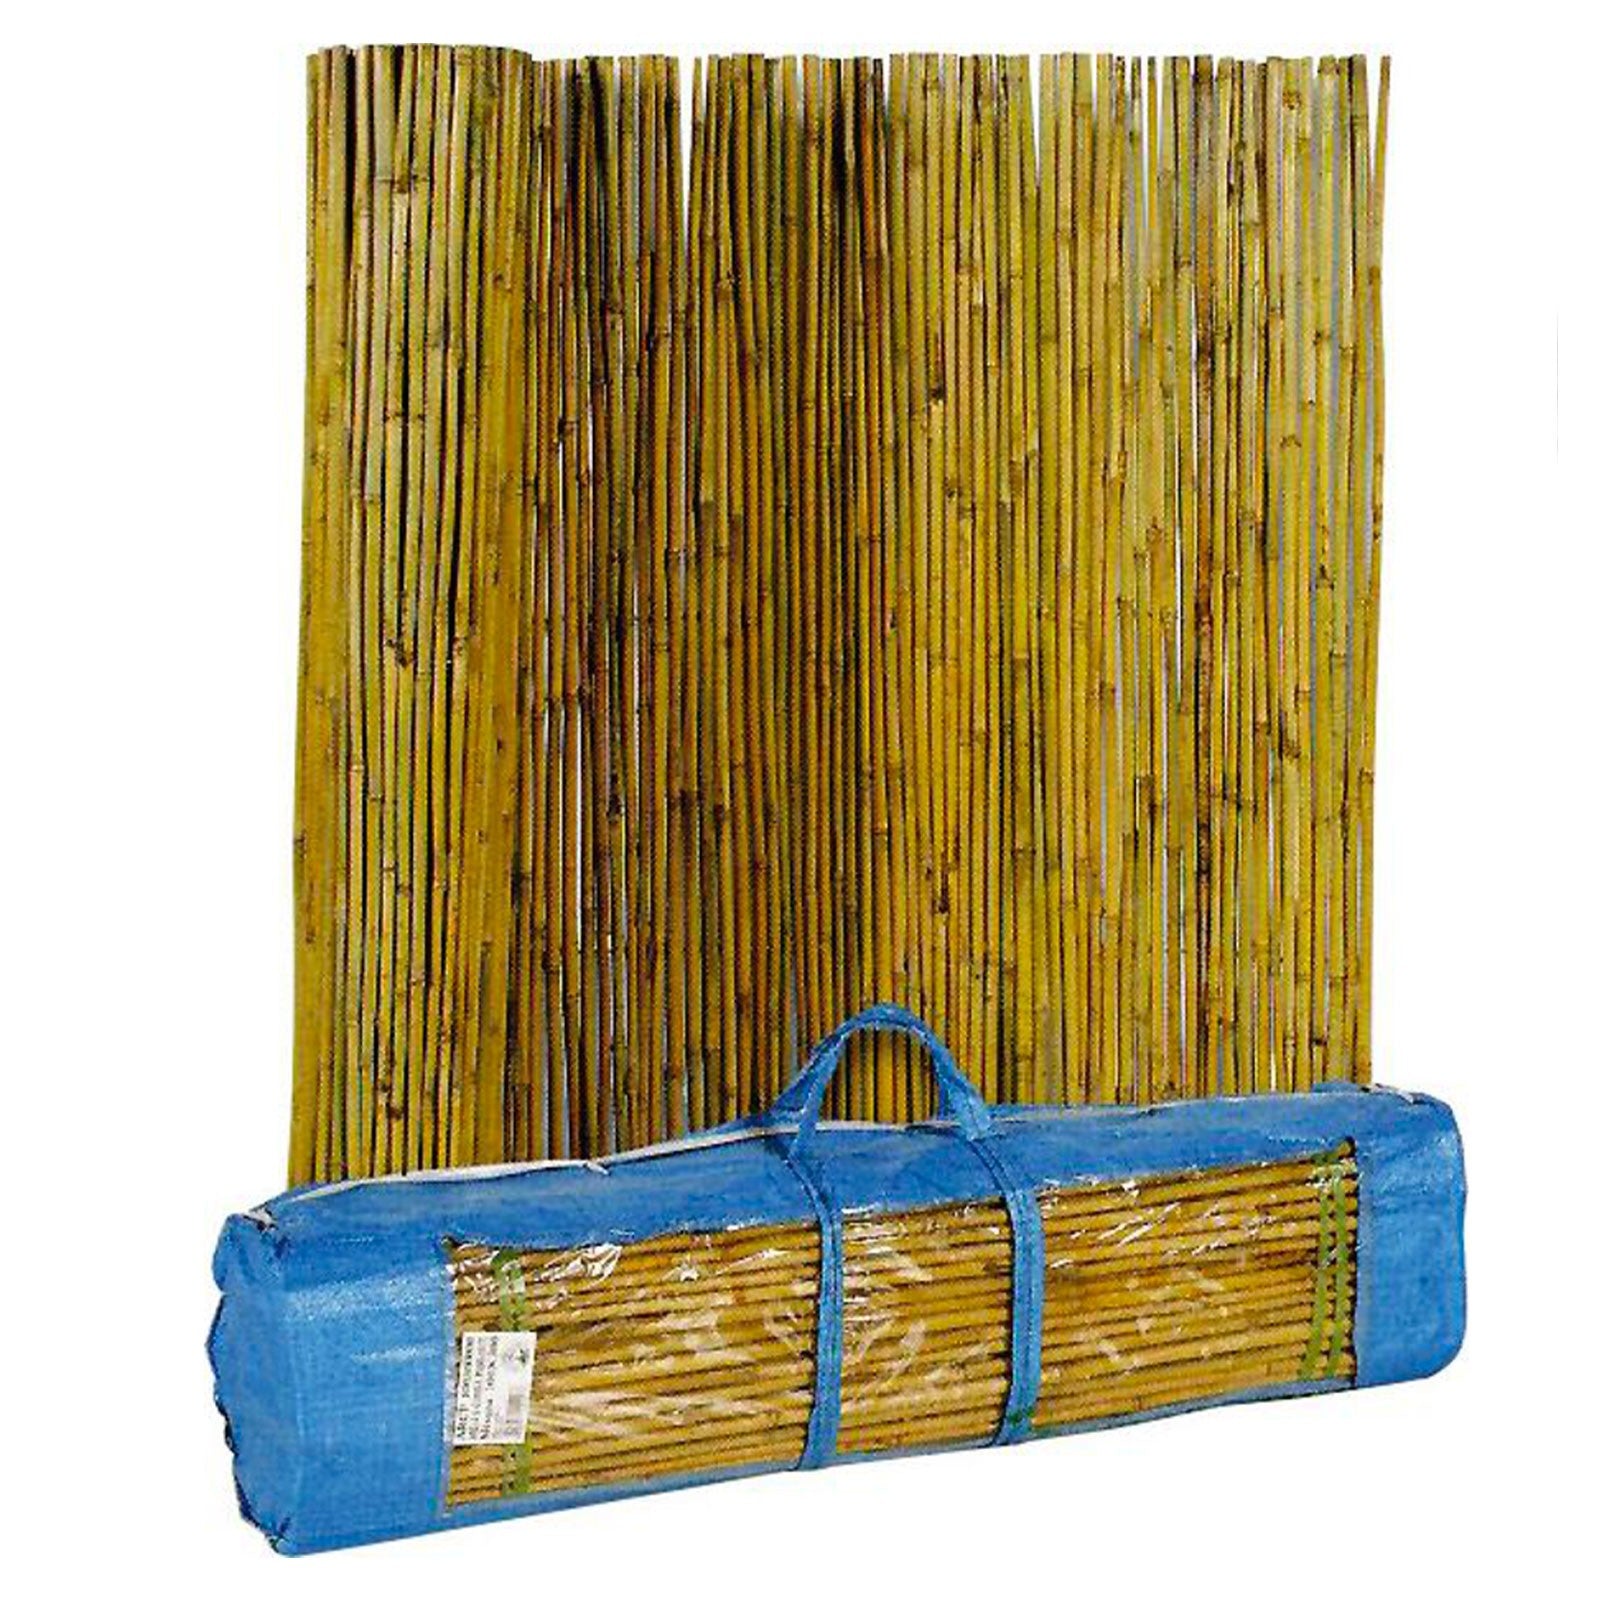 Arella in bambu per giardino con filo metallico pasante e valigetta in PVC